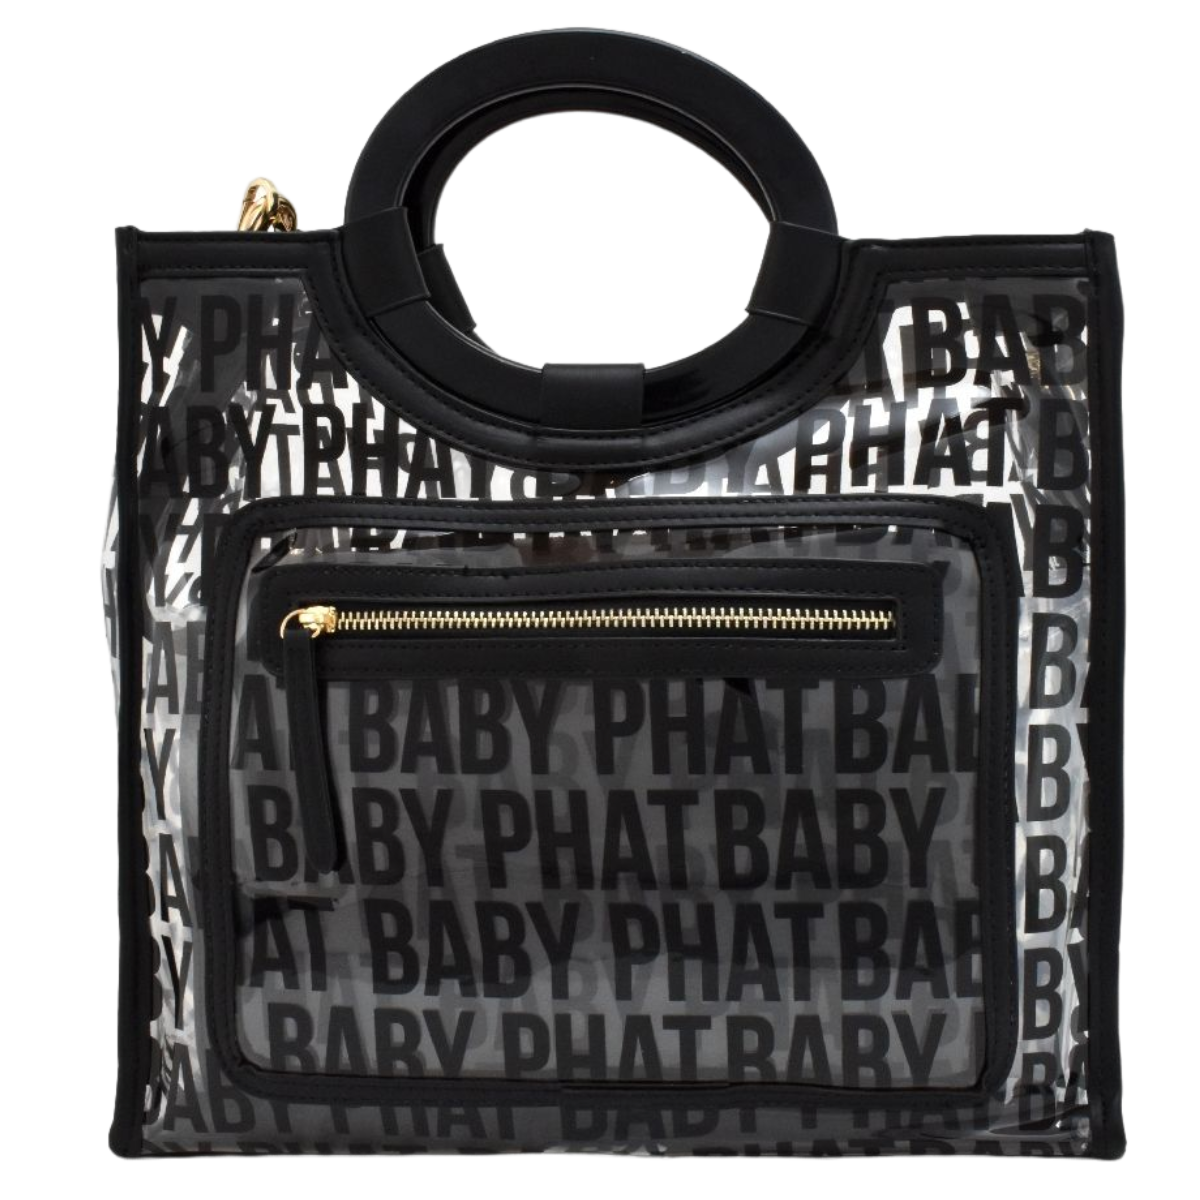 Bolsa [Baby Phat] tipo tote transparente con nombre de la marca estampado y monedero con correa color negro